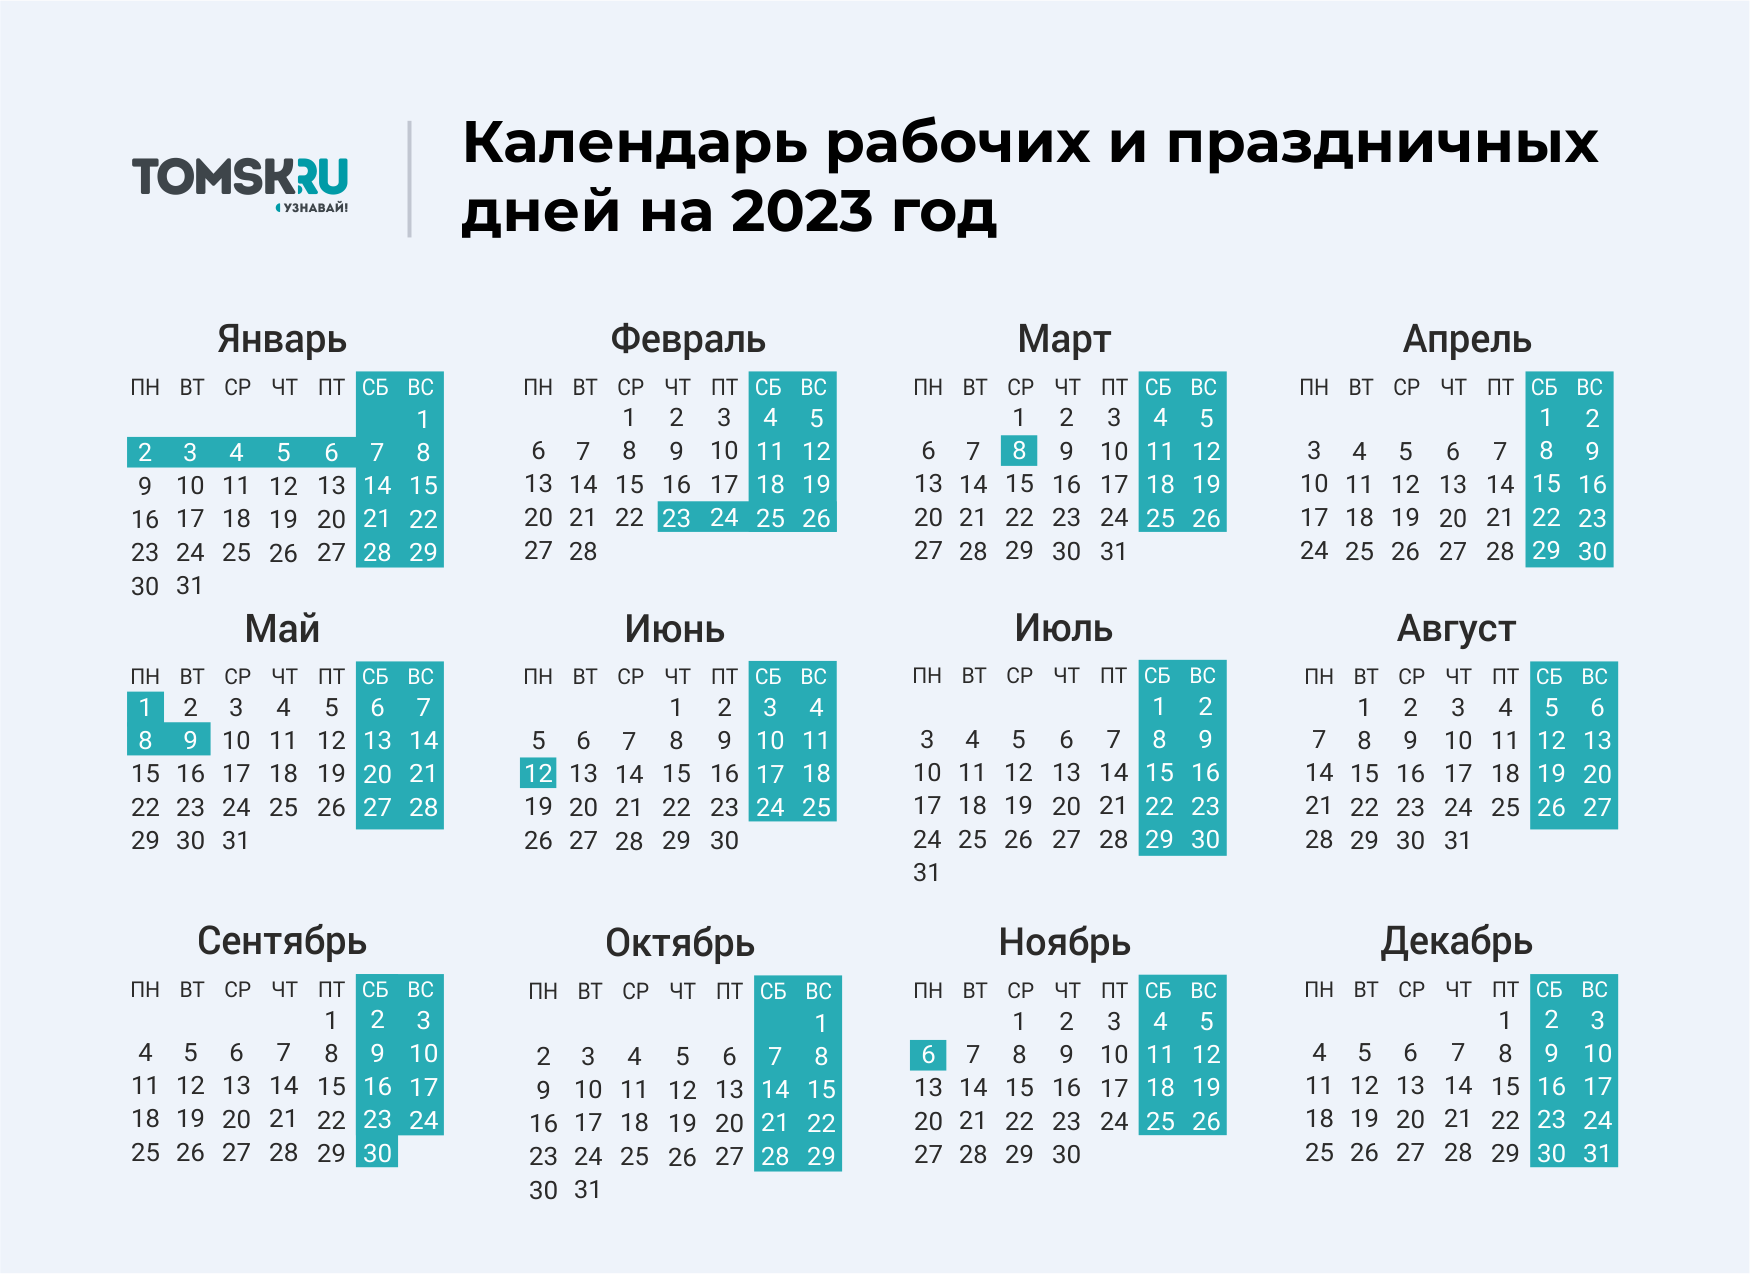 Июнь 2024 календарь с праздниками и выходными. Выходные дни в 2023 году в России календарь. Календарь выходных и праздничных дней на 2023 год в России. Календарь праздничных выходеыхв 2023 году. Календарь на 2023 год с праздниками и выходными выходные снизу.